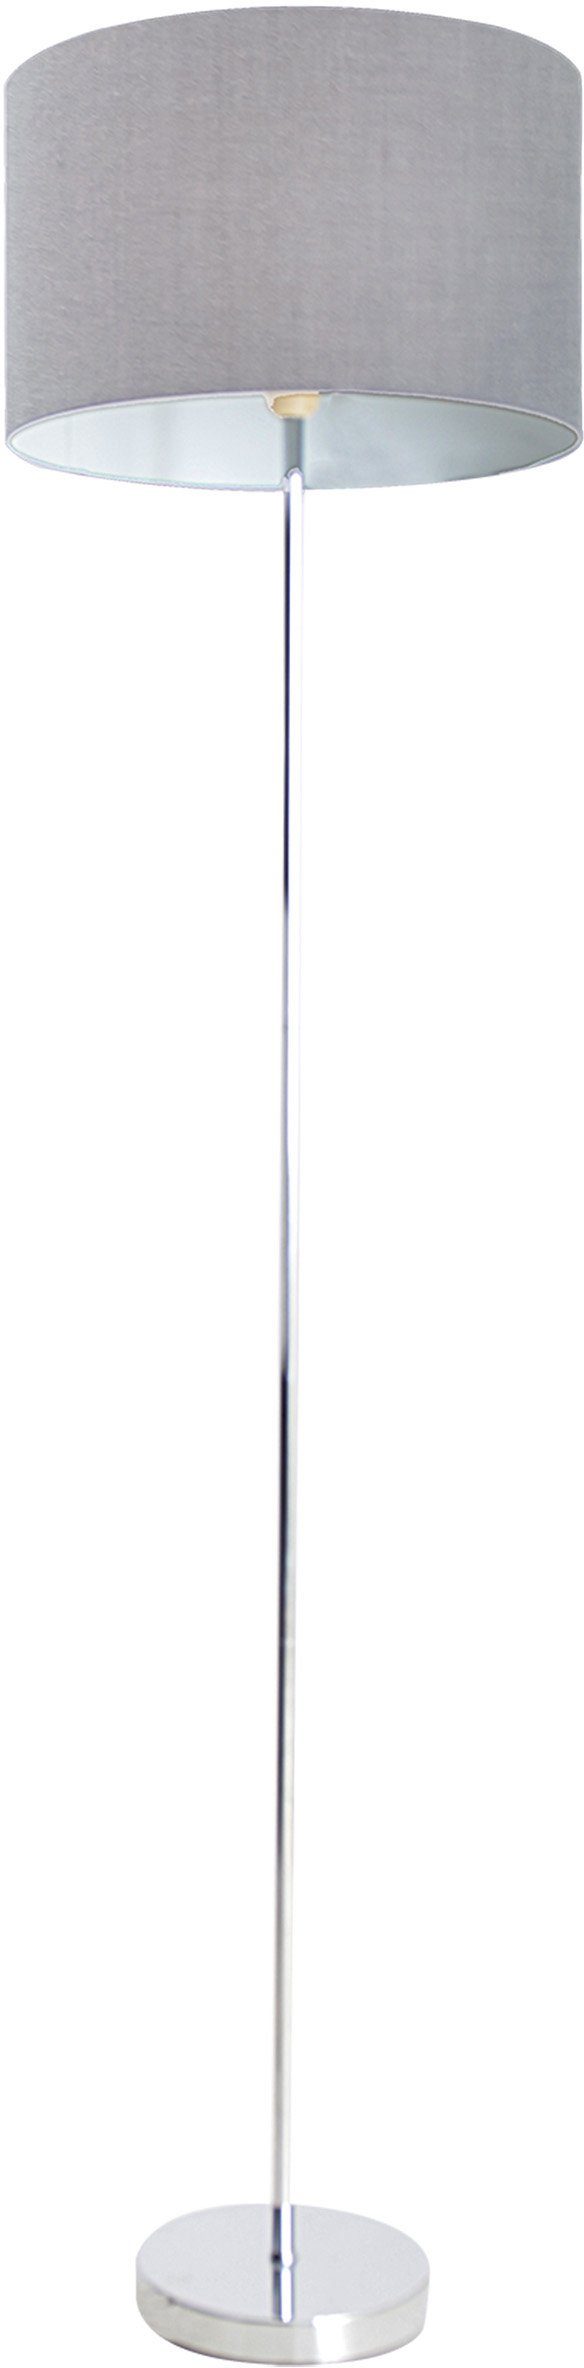 Gestell Höhe 34,5cm 160cm E27 Stehlampe Leuchtmittel, Schirm 1x grau York, 40W chrom New ohne max näve Durchmesser